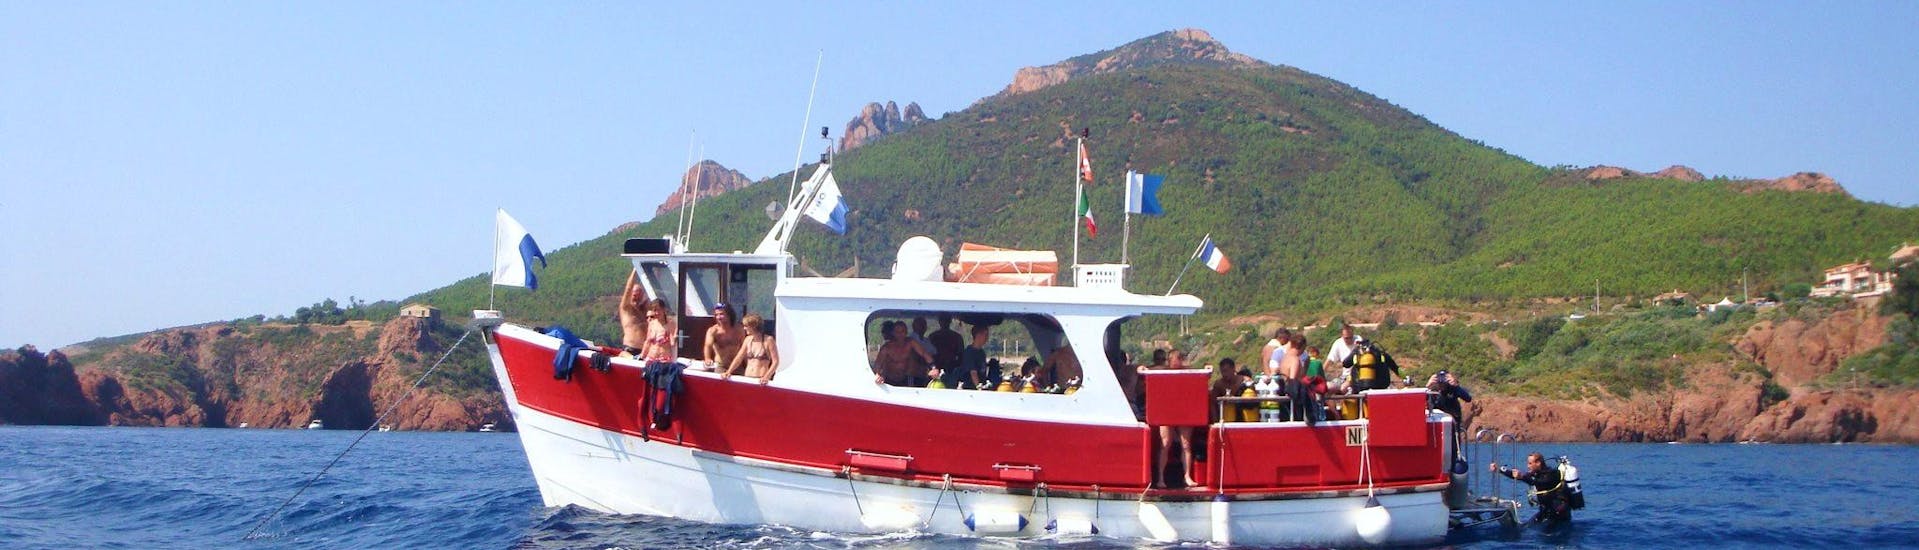 Unser Boot während des Schnorchelausflugs bei Cannes mit dem Dive Centre La Rague.